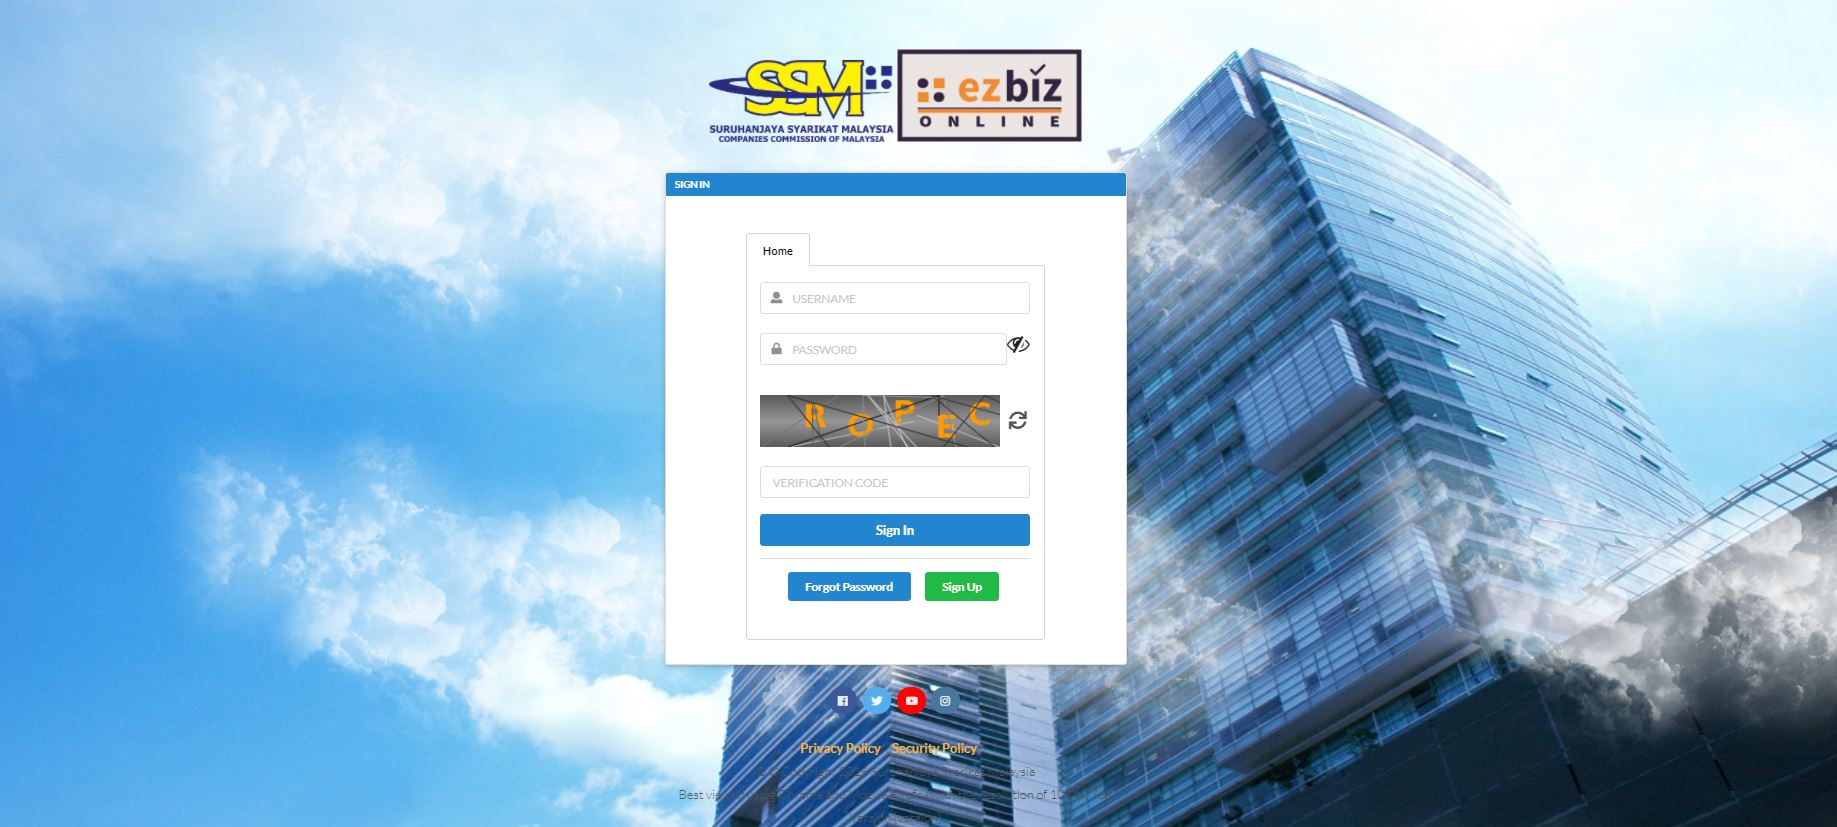 ezBiz reprint SSM Certificate online